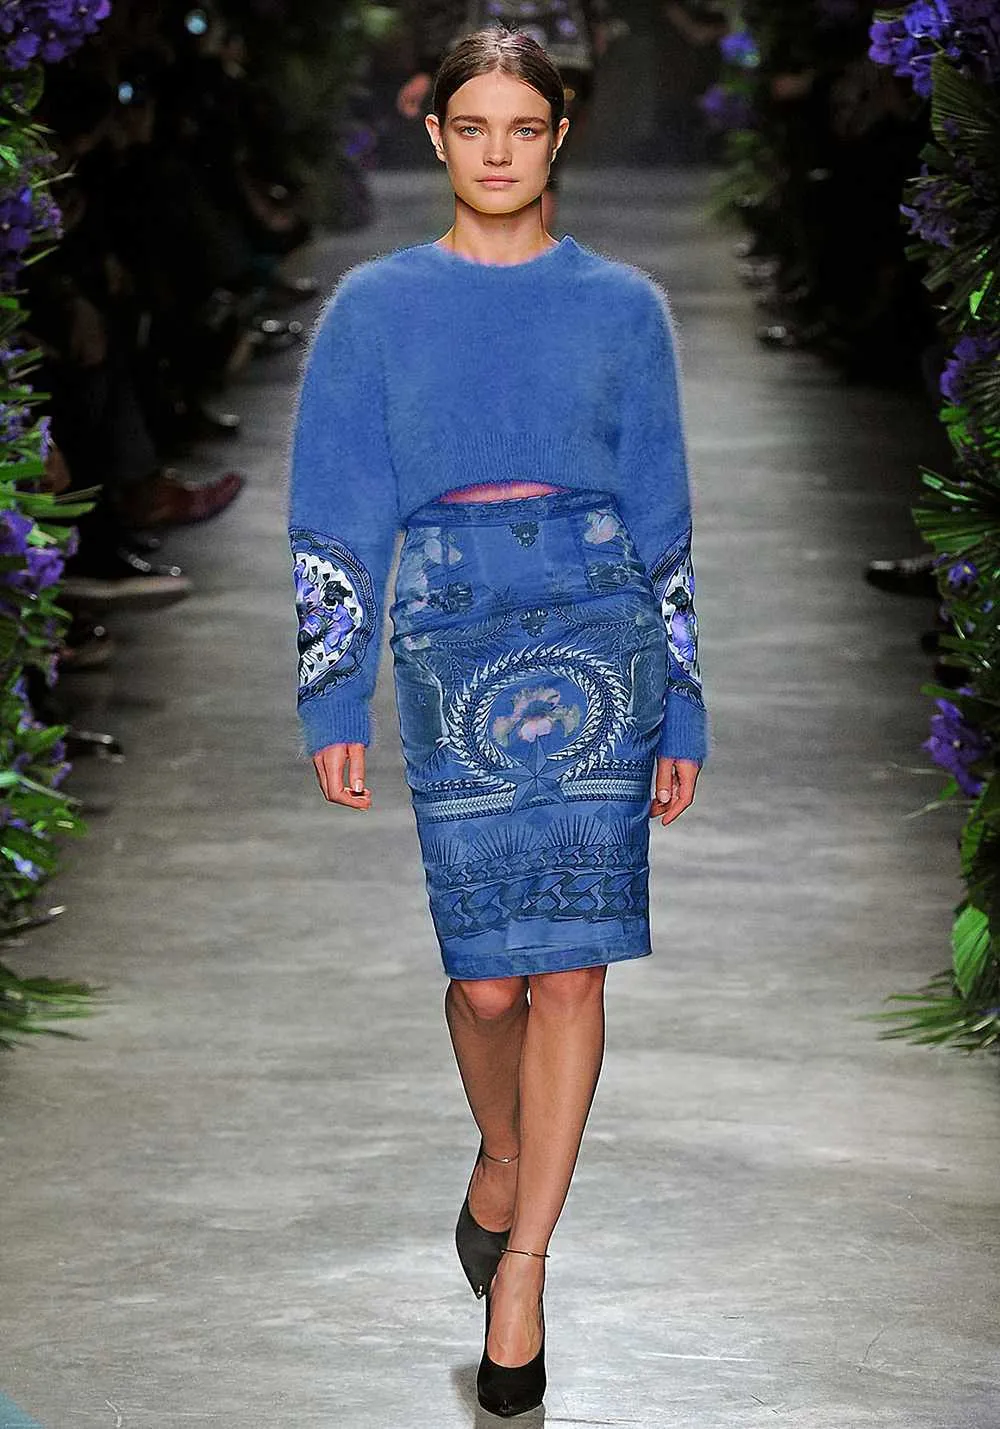 2020セールスプリングイン卸売滑走路の新しいホットヒえエンドクルーネック長袖パネルプリントファッション女性のセーター